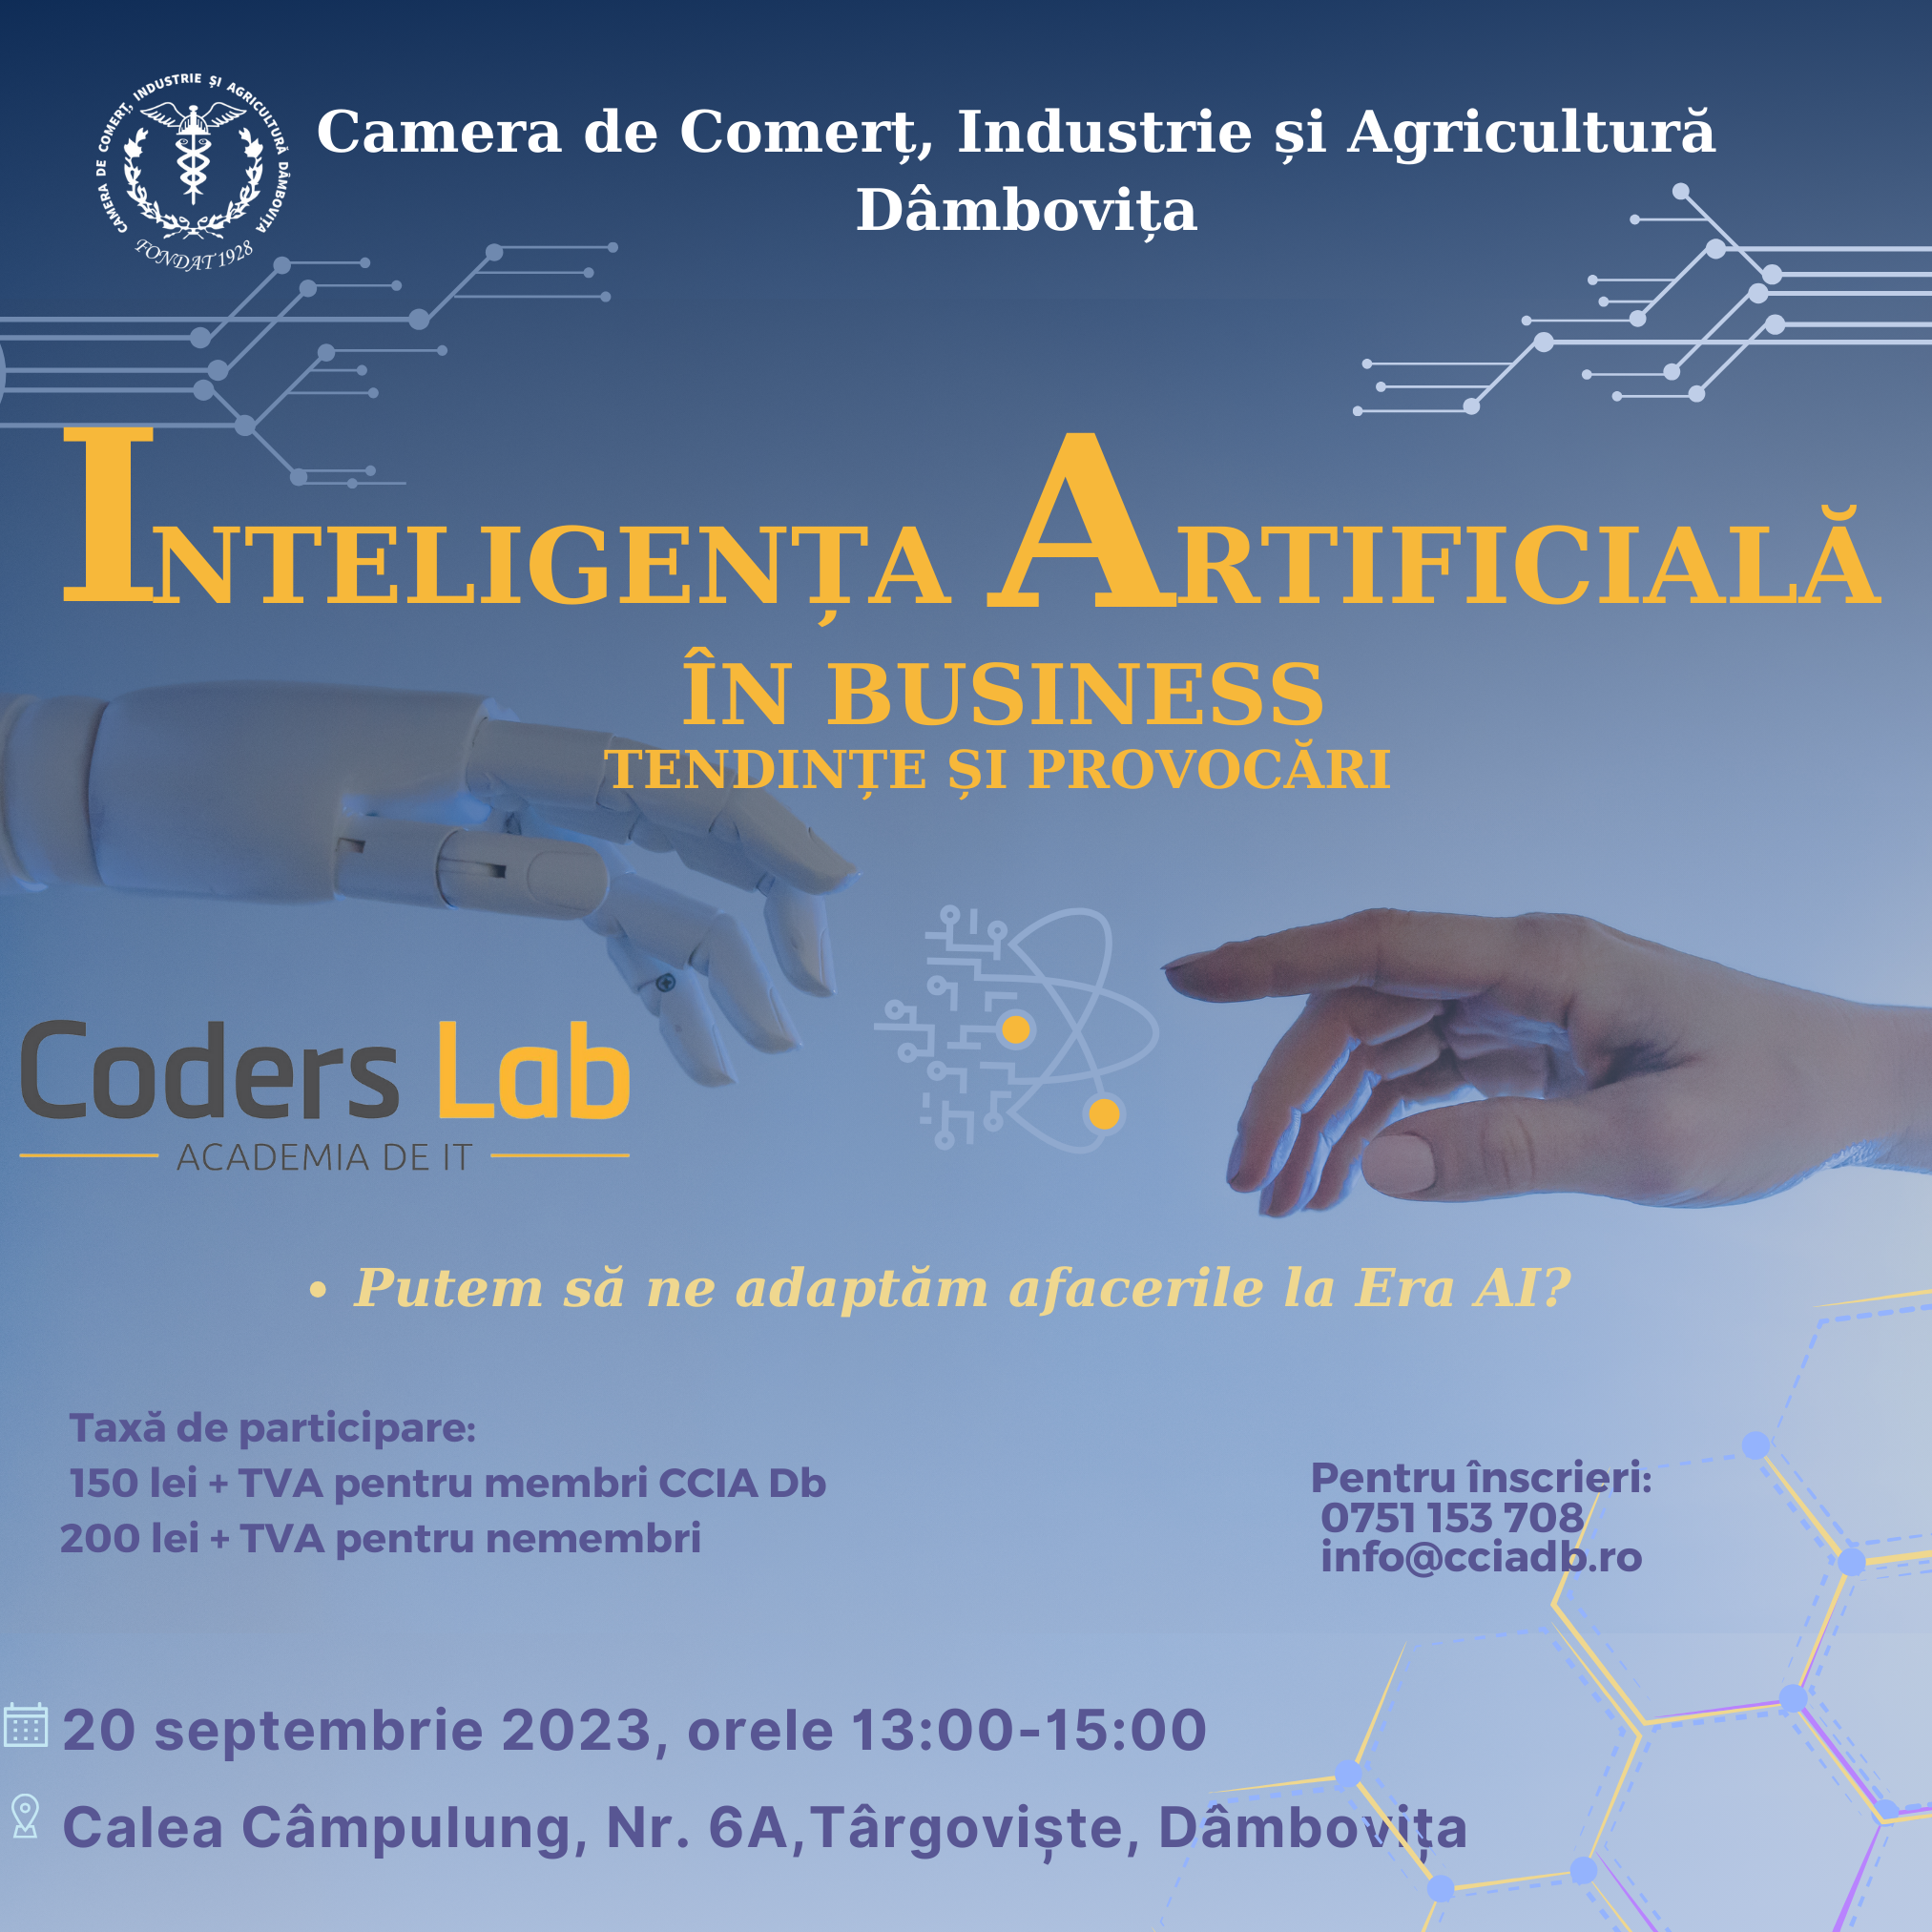 Inteligența Artificială în Business: Tendințe și provocări, Conferință organizată de Camera de Comerț Dâmbovița și Coders Lab -Academia de IT. Dacă nu te-ai înscris încă, mai ai timp să te înregistrezi până vineri, 15 septembrie. Nu rata această oportunitate!